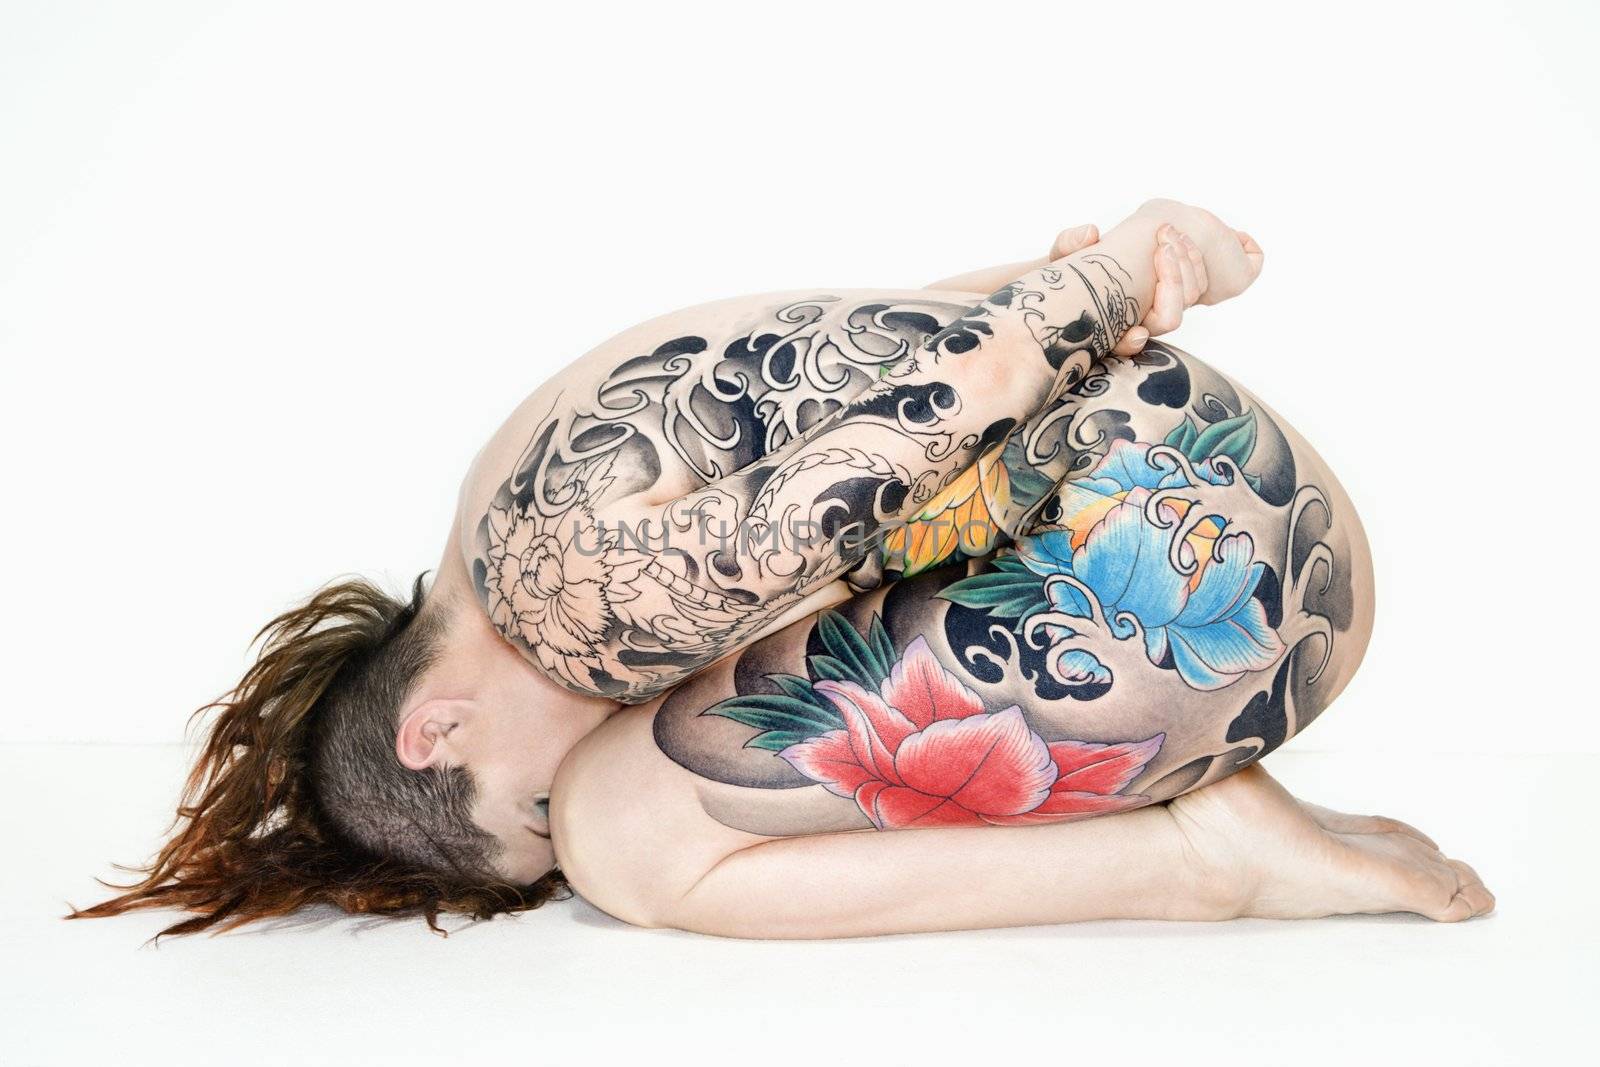 Nude tattooed woman on side by iofoto